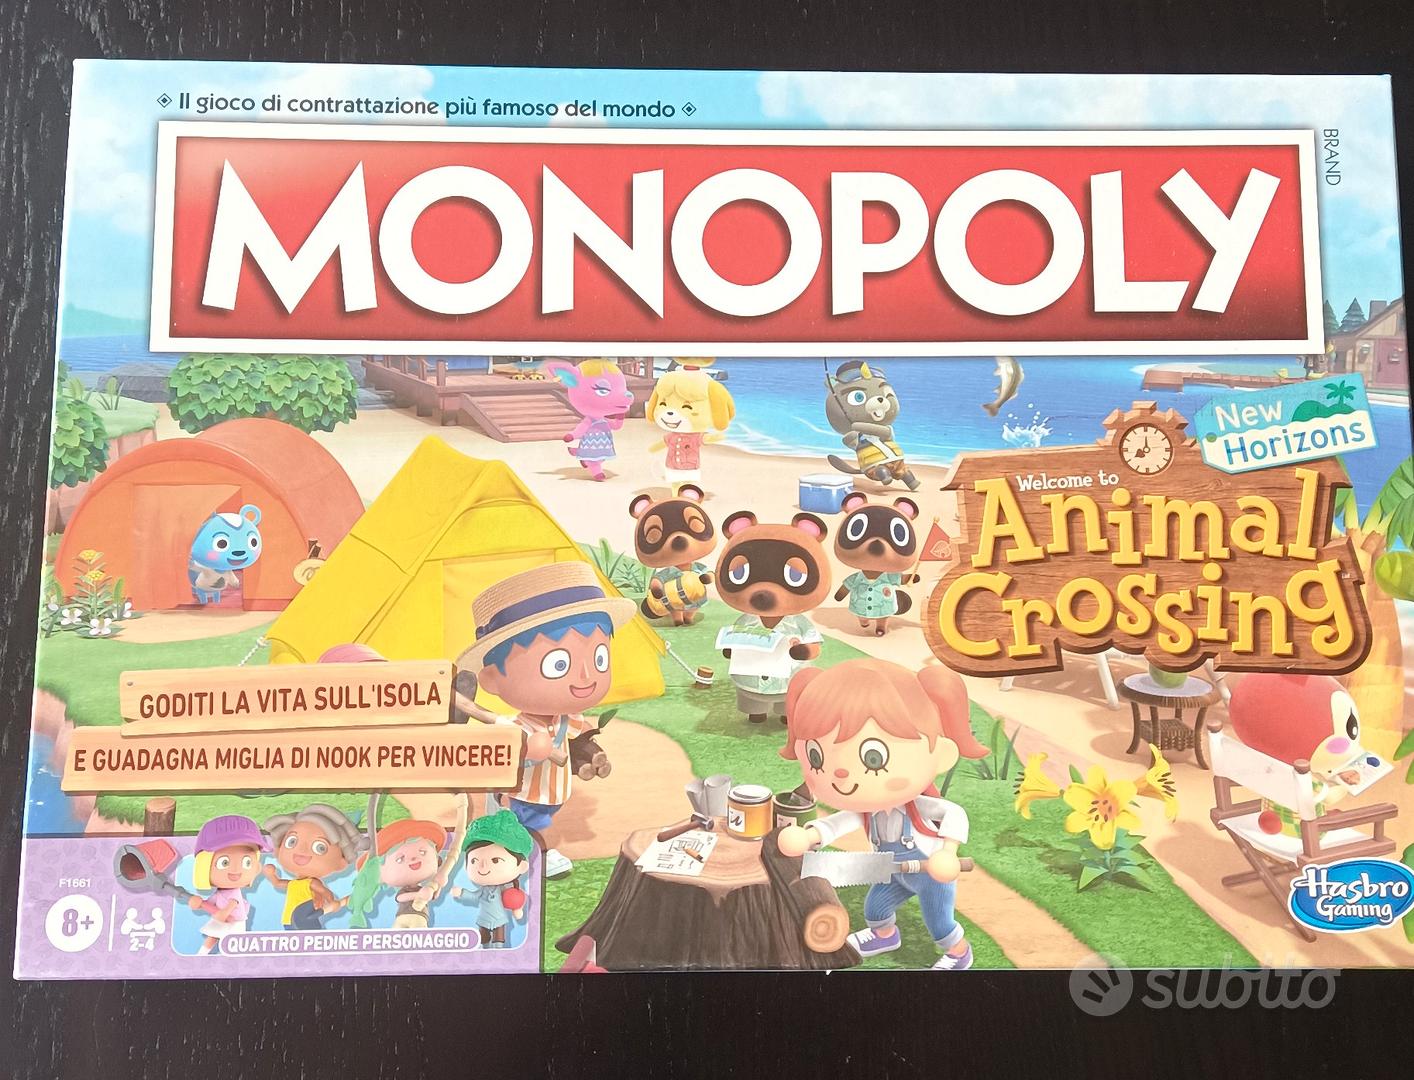 Monopoly edizione Animal Crossing - Tutto per i bambini In vendita a Milano